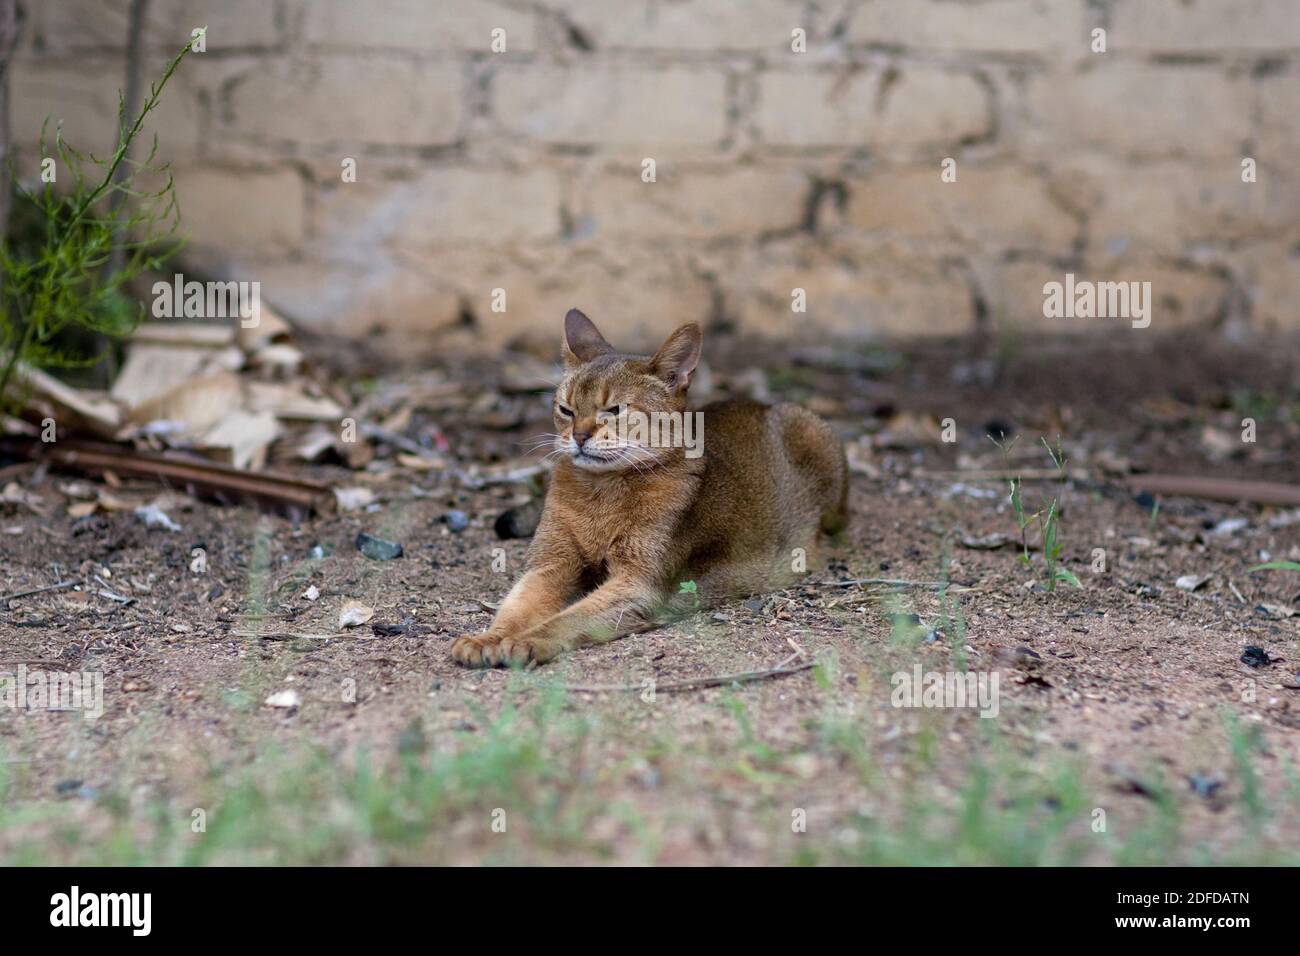 Un beau chat Abyssinien se trouve paisiblement, avec les jambes avant étendues, devant un mur de briques entouré de mauvaises herbes et de feuilles séchées. Banque D'Images